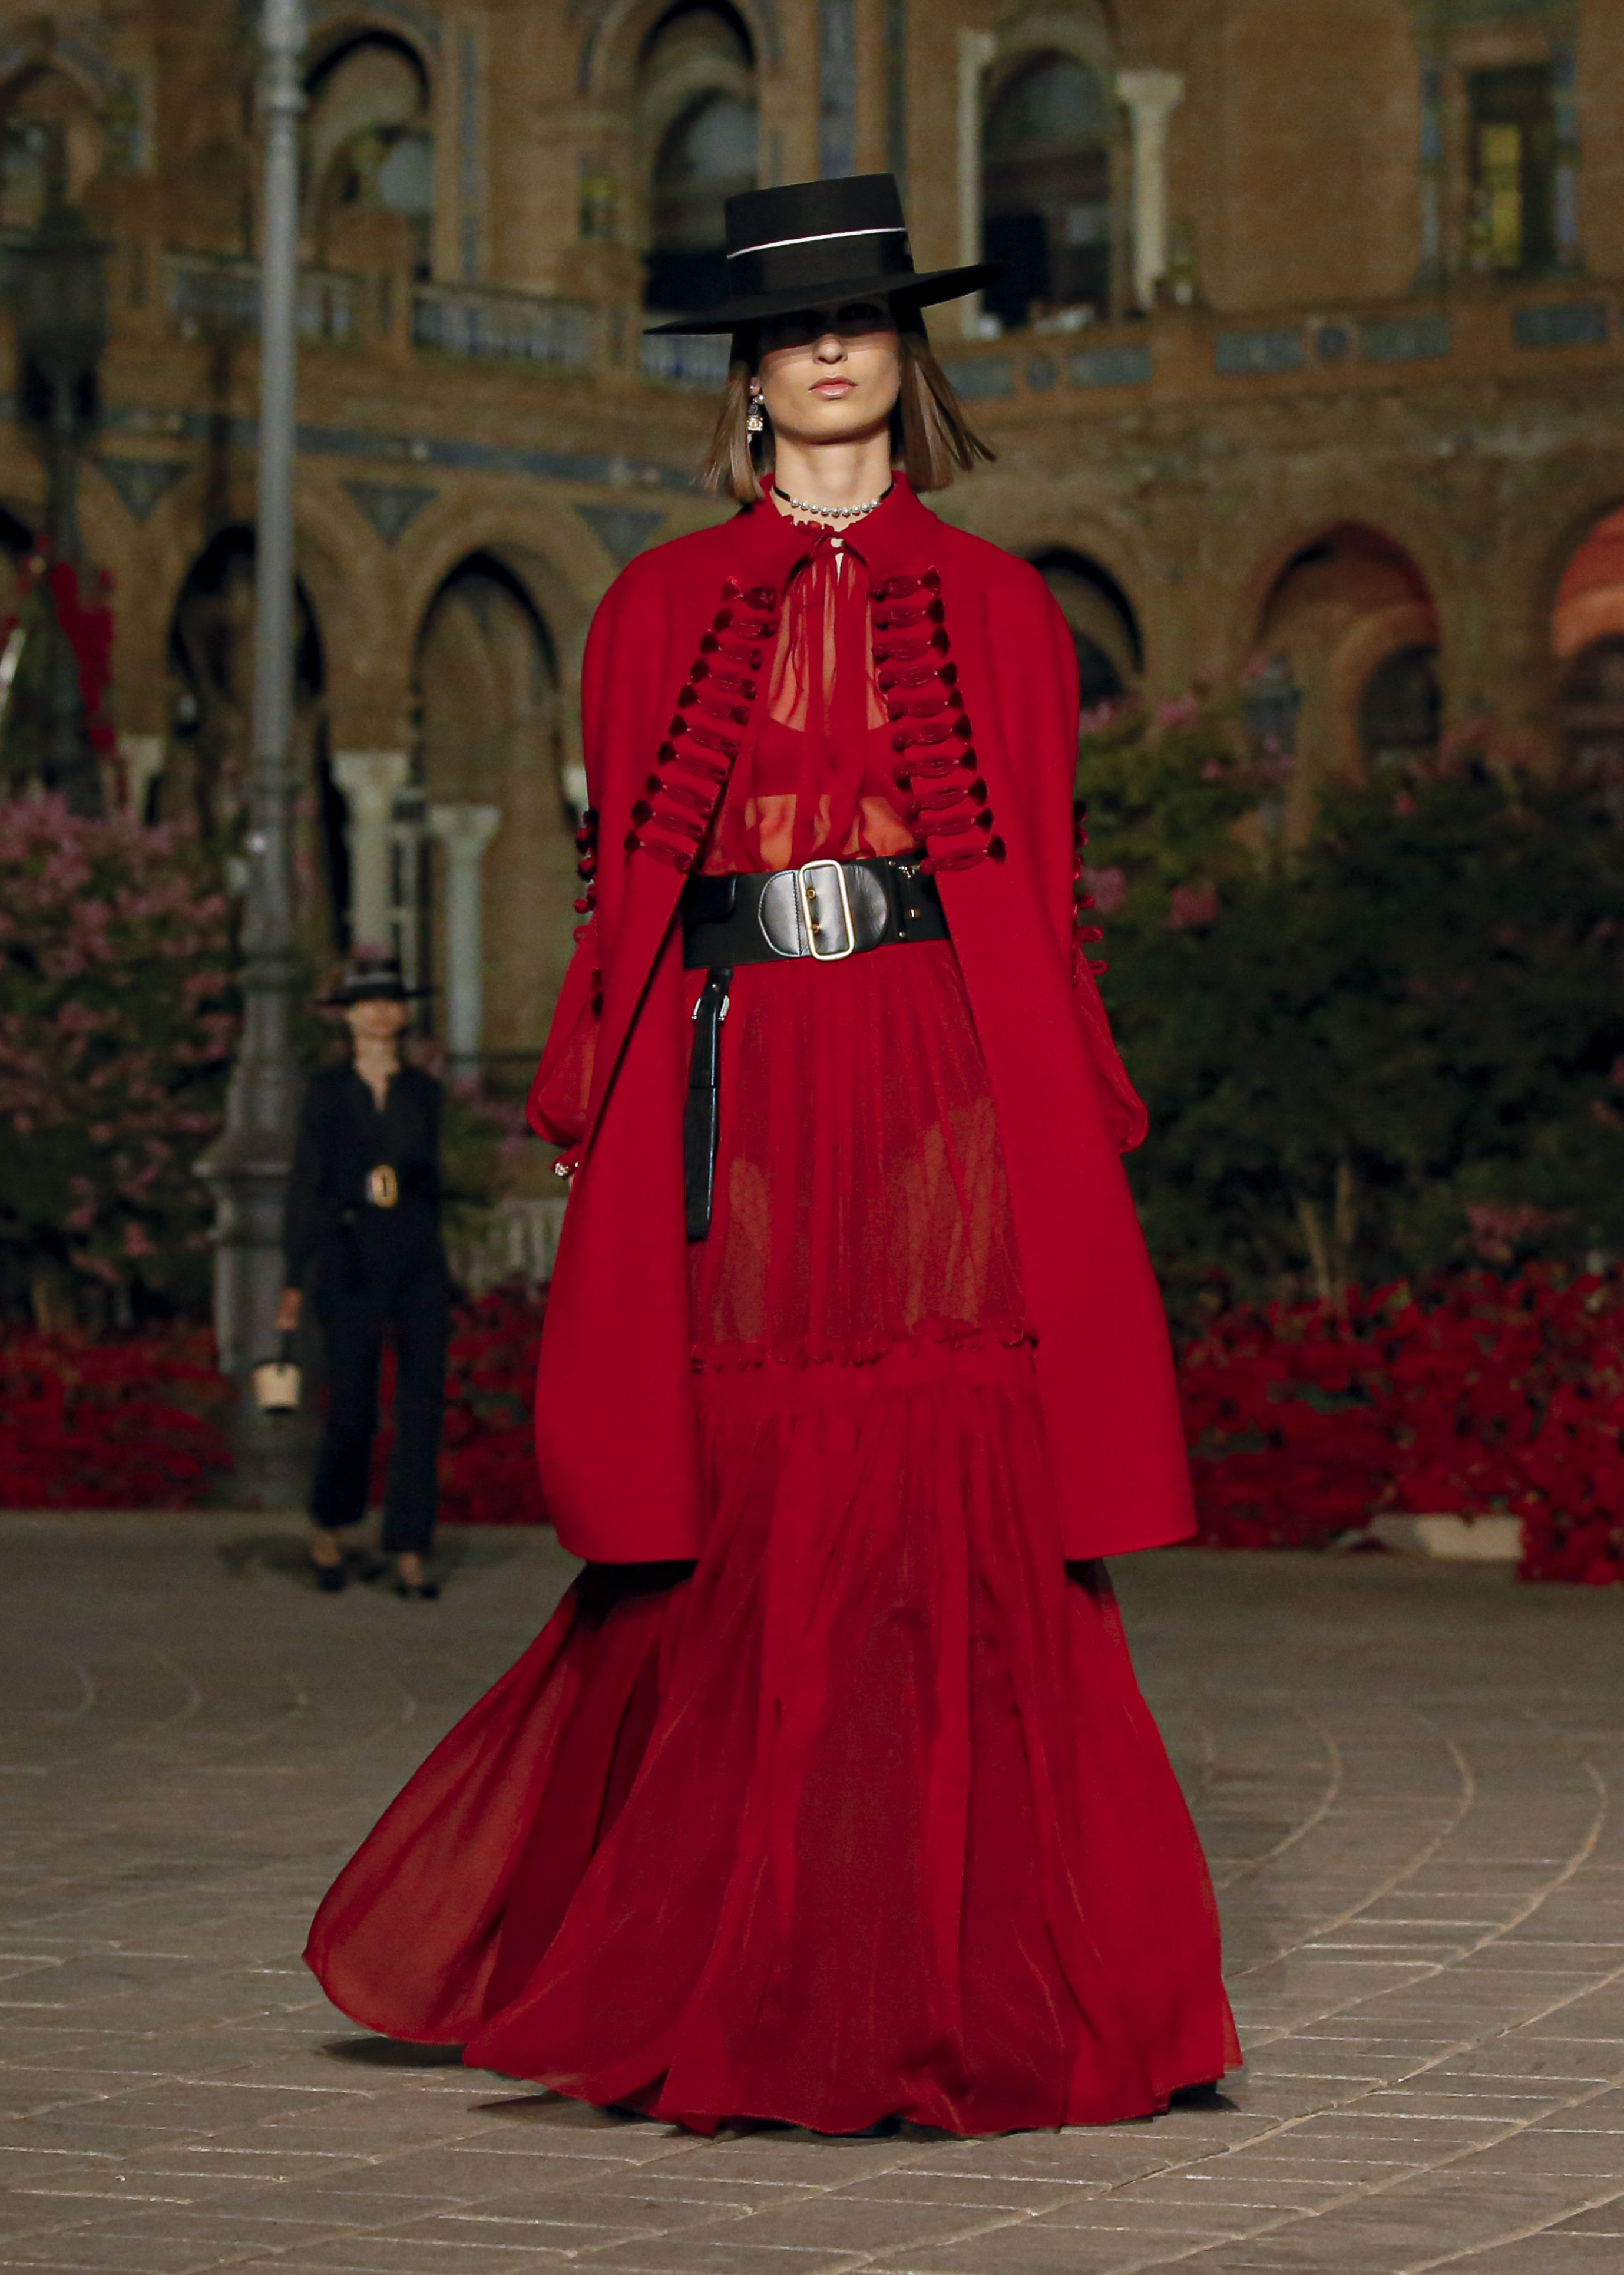 Tiendas con más 100 años de historia: capas, y sombreros españoles que conquistan Dior, Victoria Federica y famosos de todo planeta | Moda